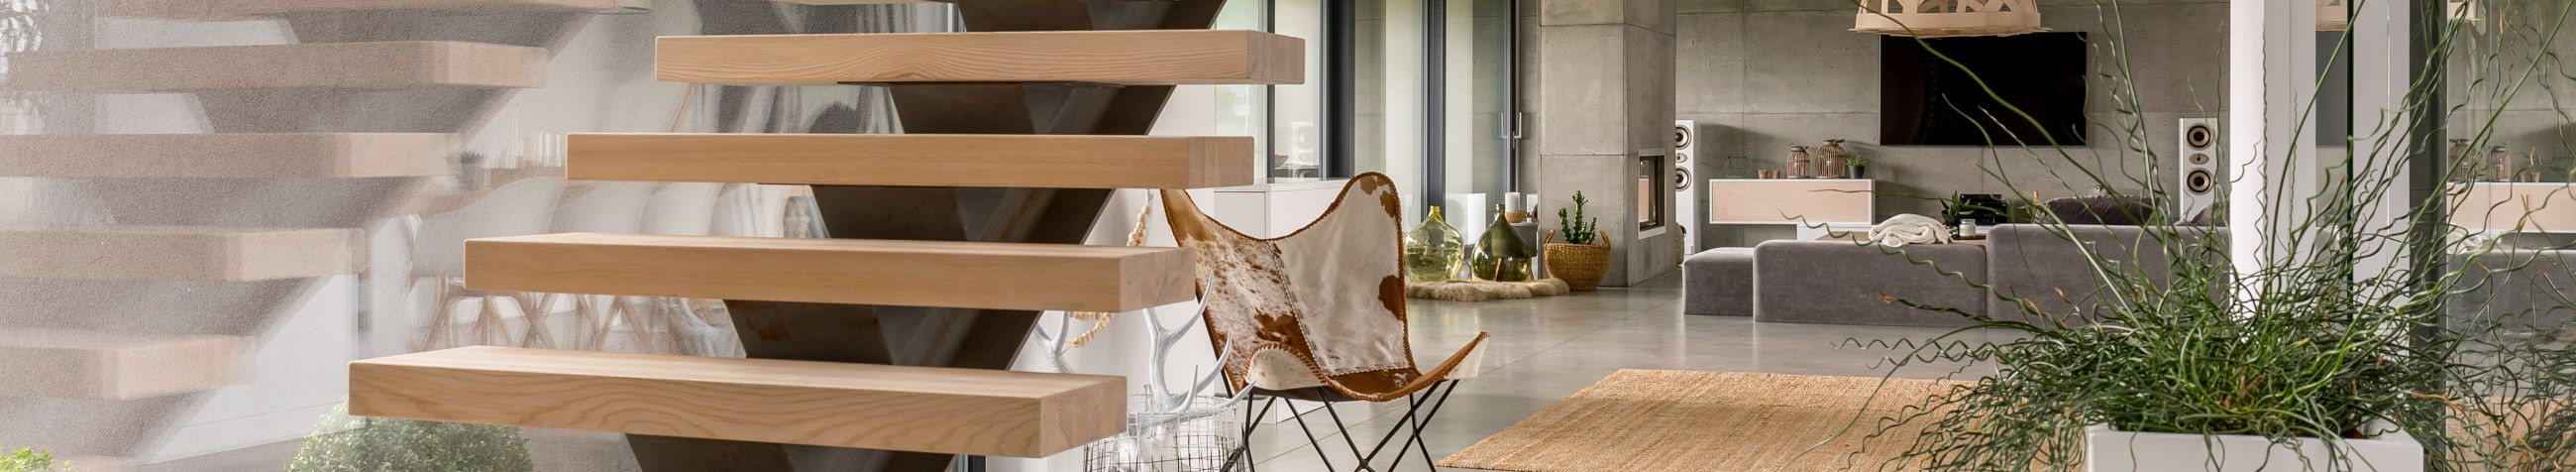 Allestonia OÜ spetsialiseerub metallist ja puidust treppide projekteerimisele, valmistamisele ja paigaldamisele, tuues kaasaegse elegantsi ja vastupidavuse klientide kodudesse ja ärihoonetesse.